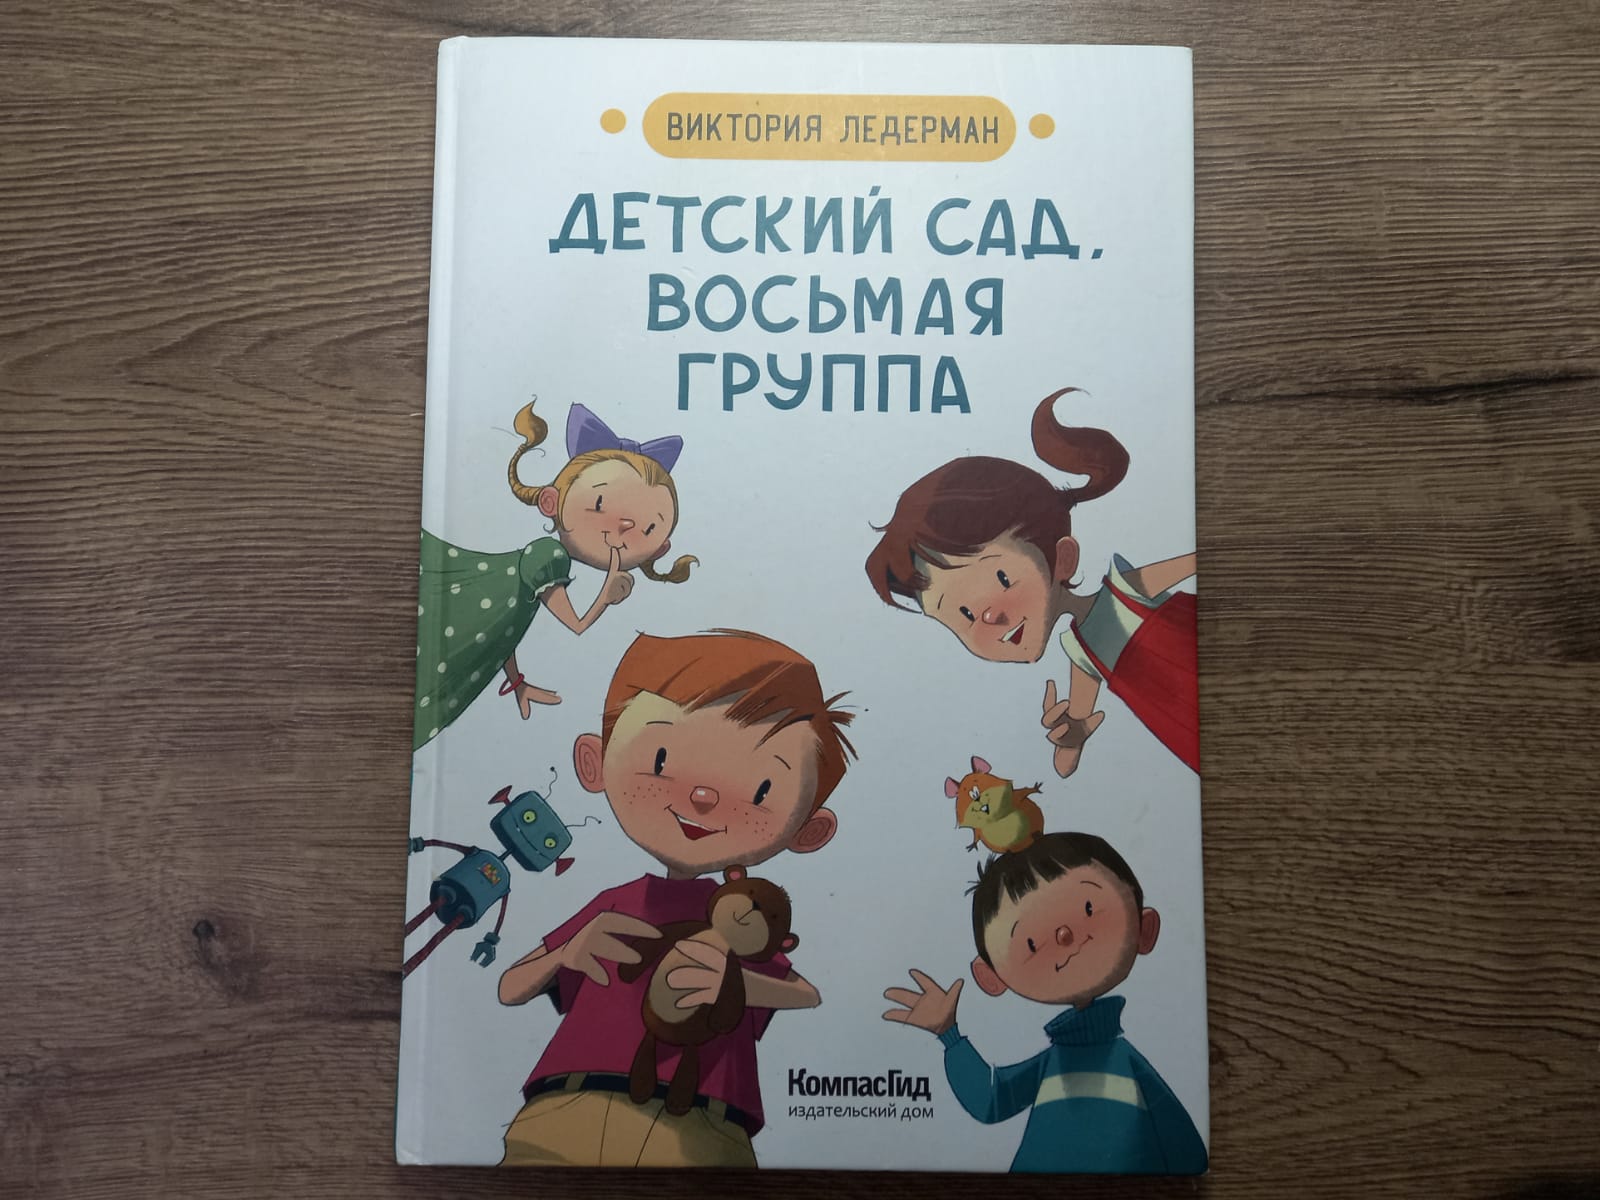 Книга про детский сад для детей 2-3 лет